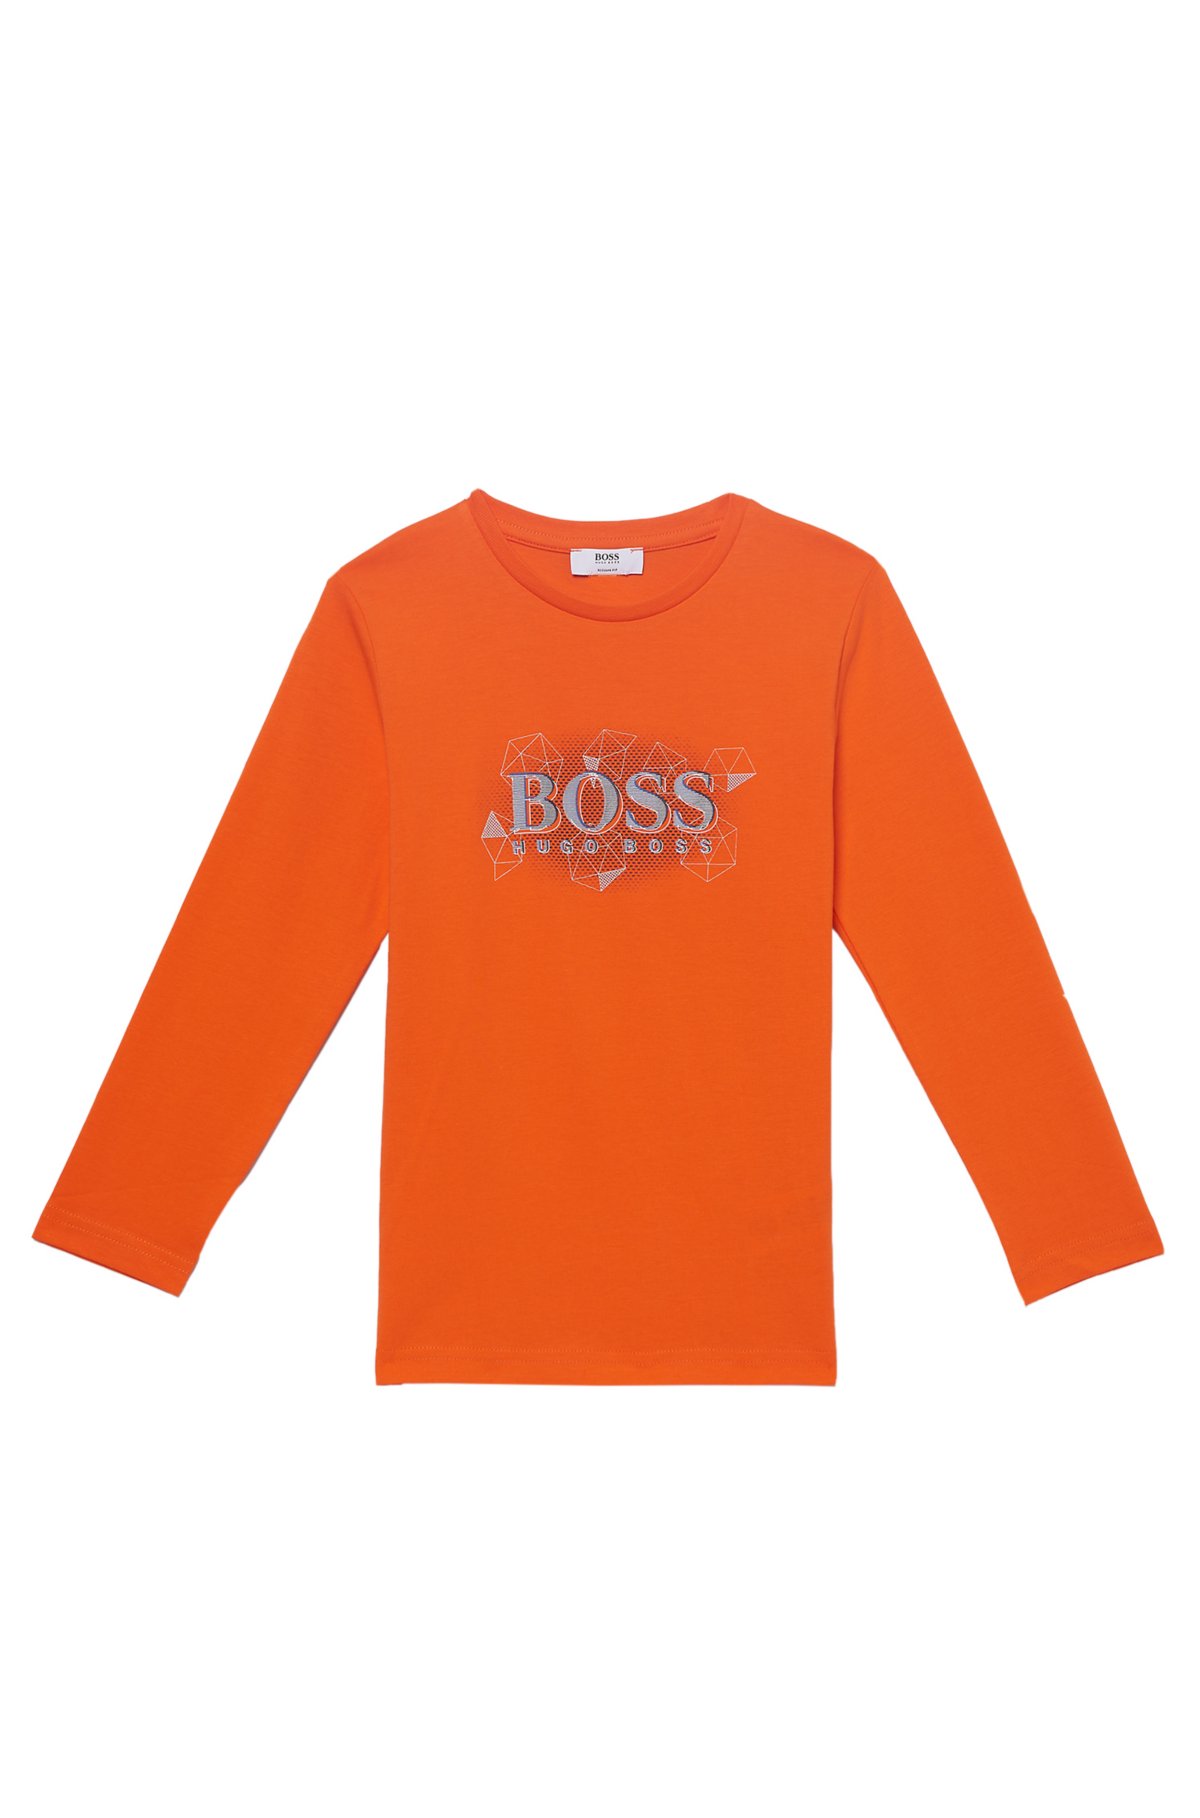 BOSS - 'J25987' Cotton T-Shirt